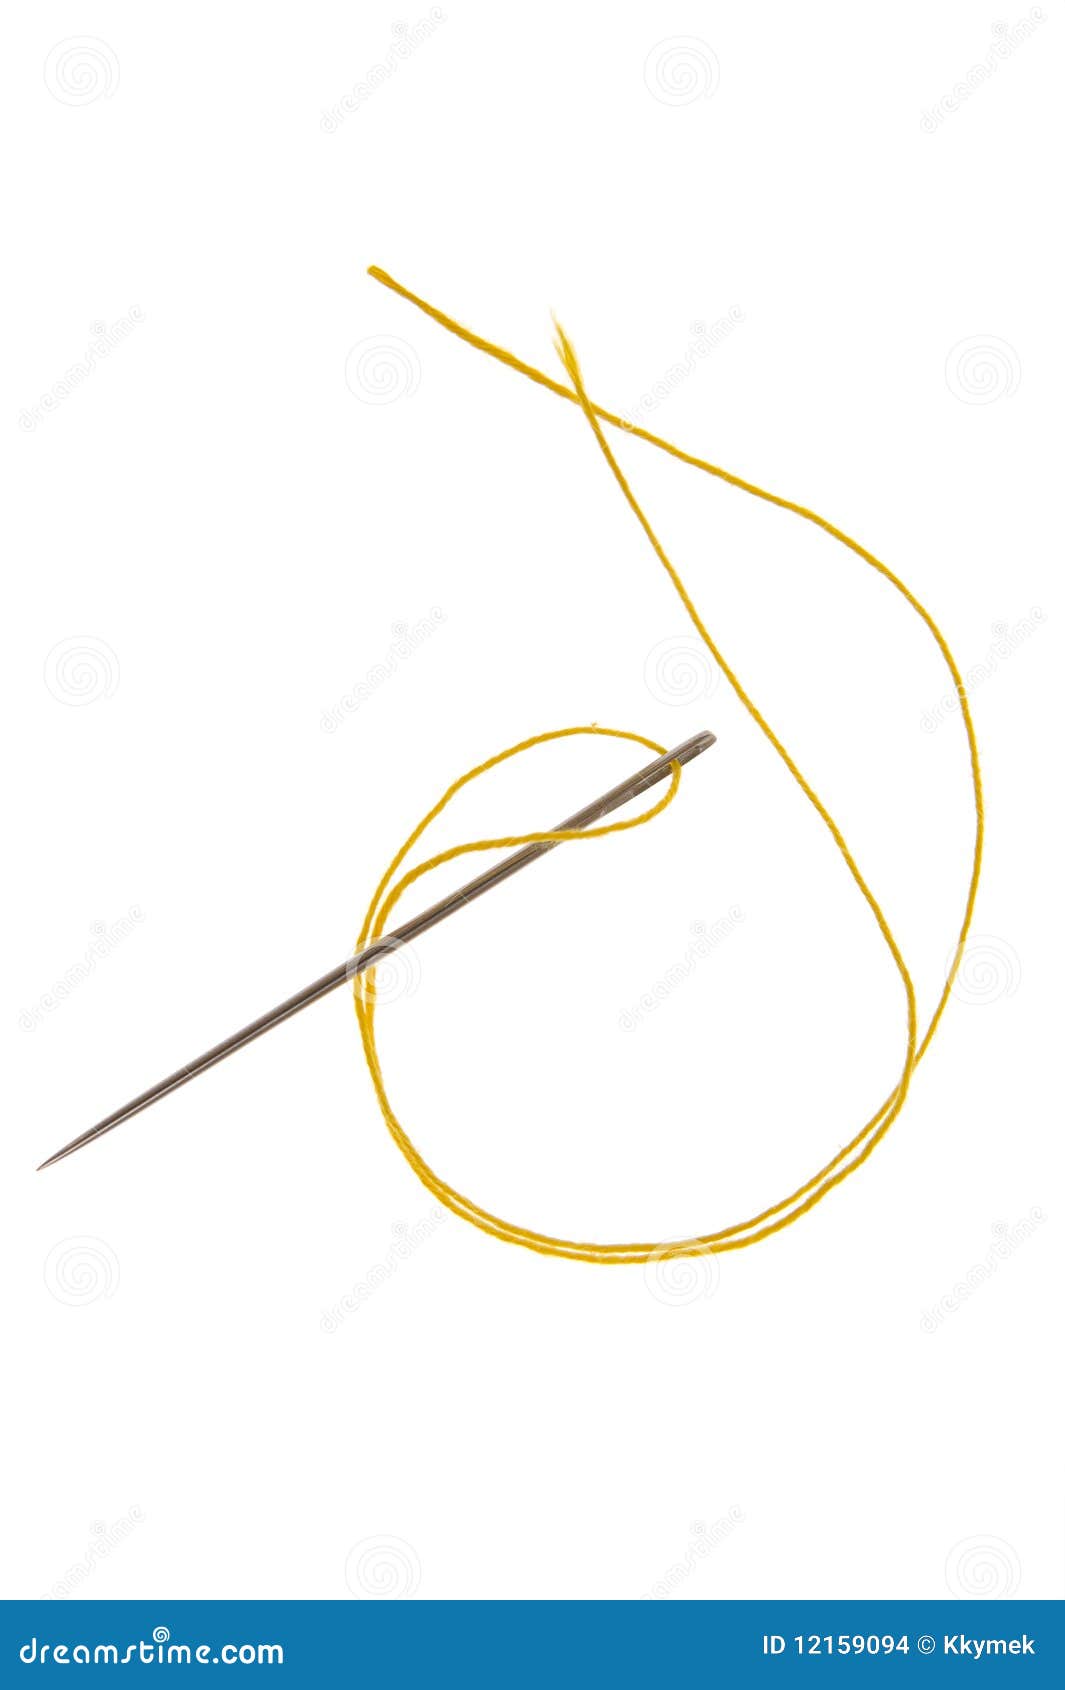 Needle stock photo. Image of thin, needle, isolated, details - 12159094